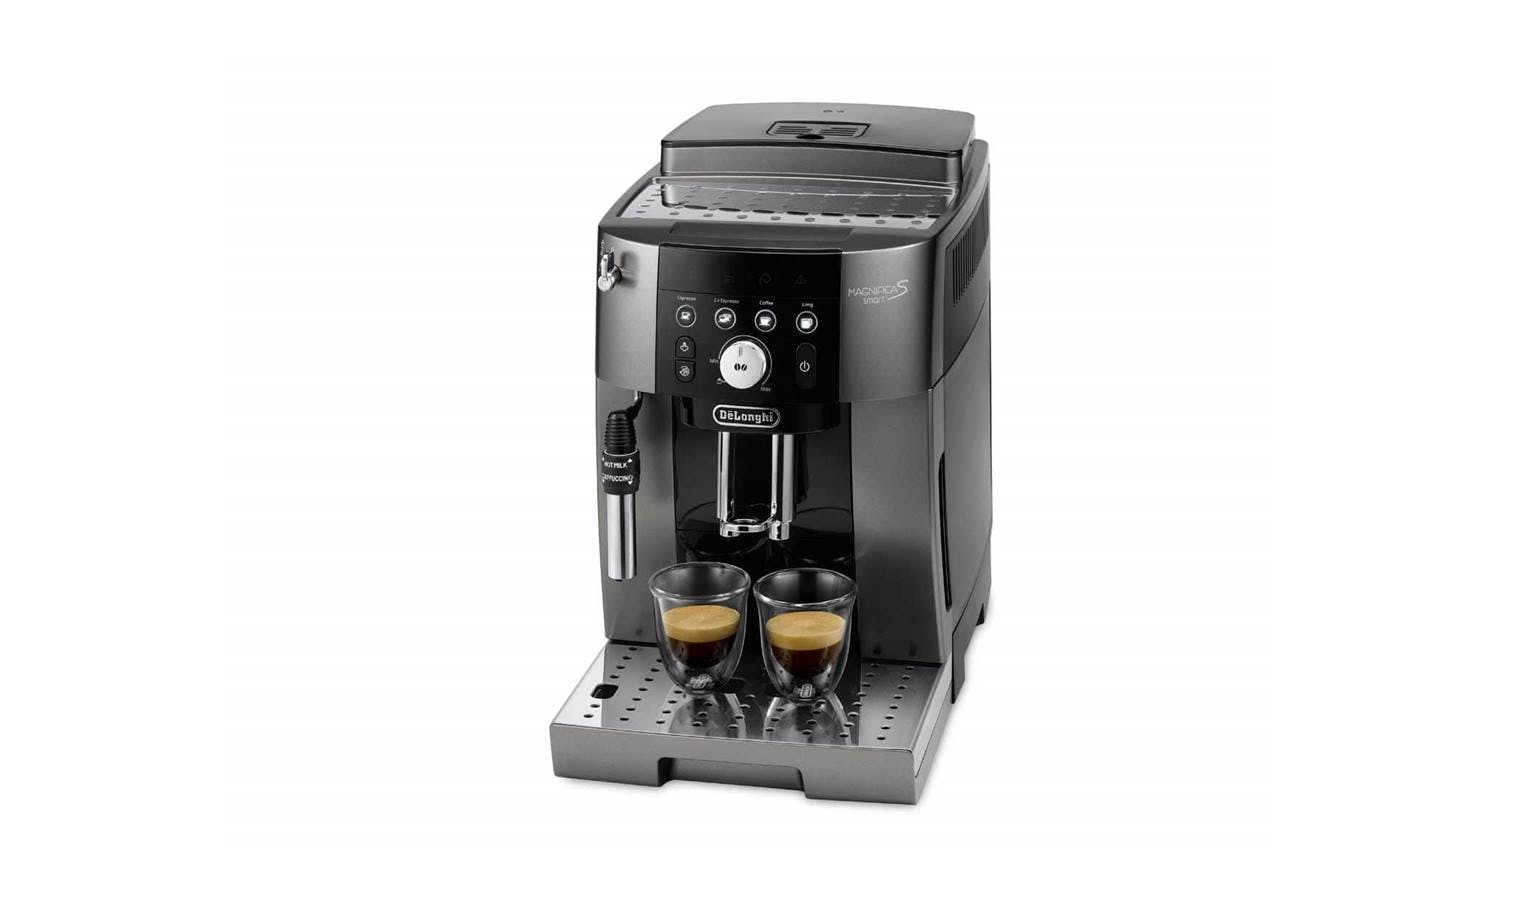 DeLonghi Magnifica S Smart Automatic Coffee Machine 